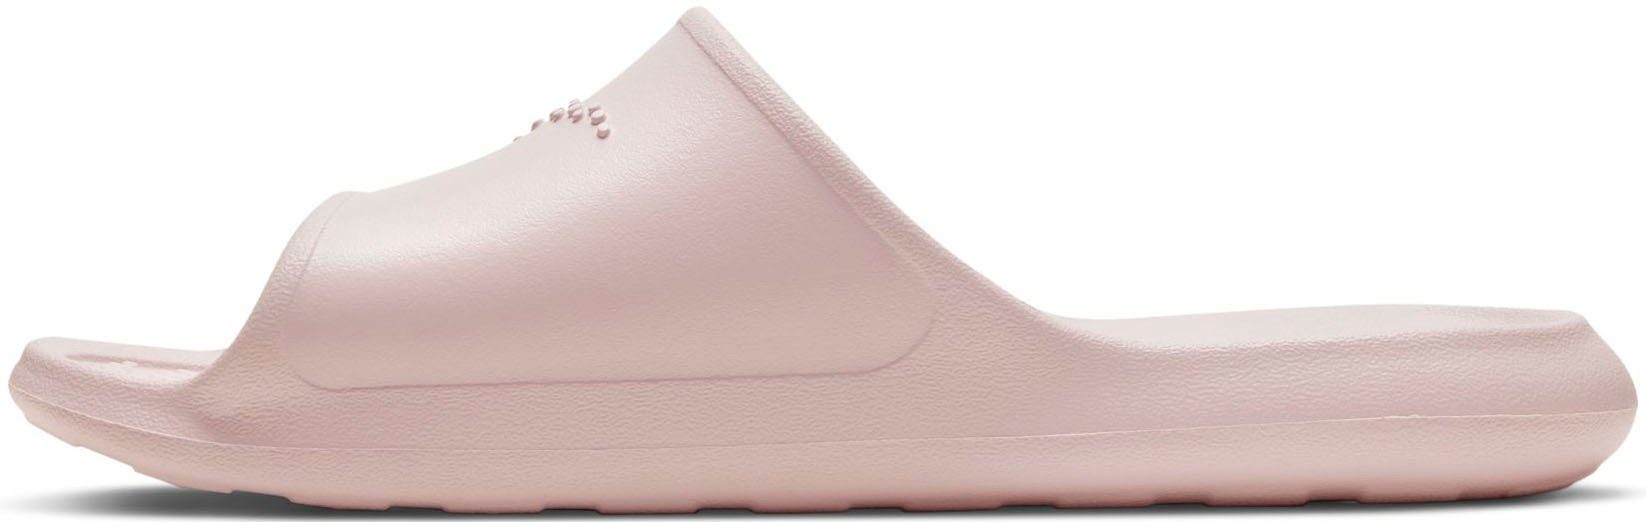 Nike Sportswear VICTORI ONE SHOWER SLIDE Badesandale rosa